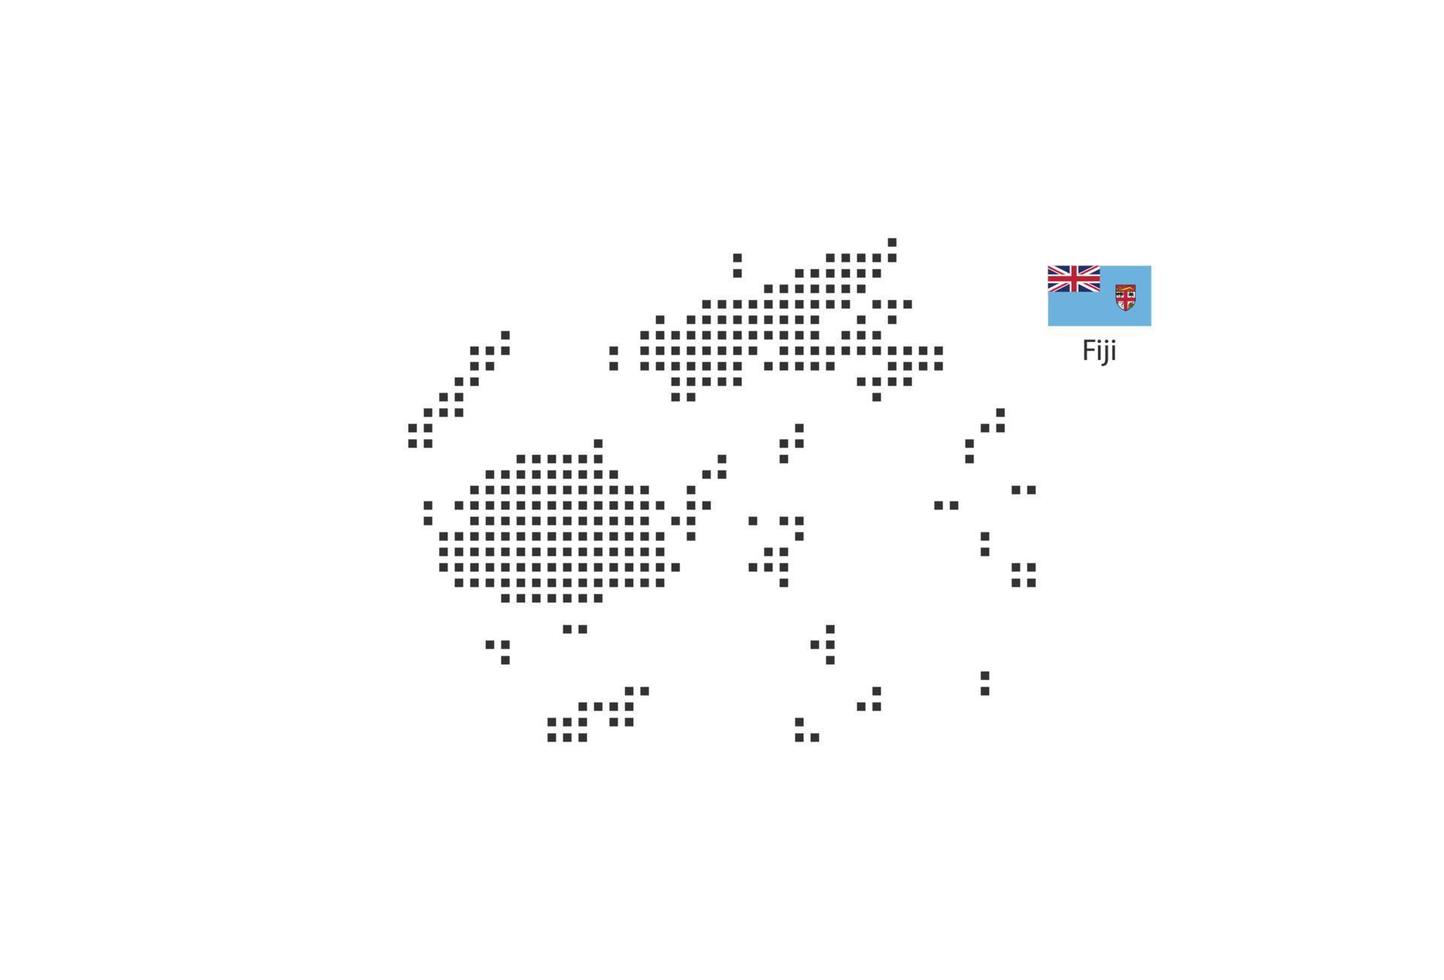 vettore piazza pixel tratteggiata carta geografica di fiji isolato su bianca sfondo con fiji bandiera.